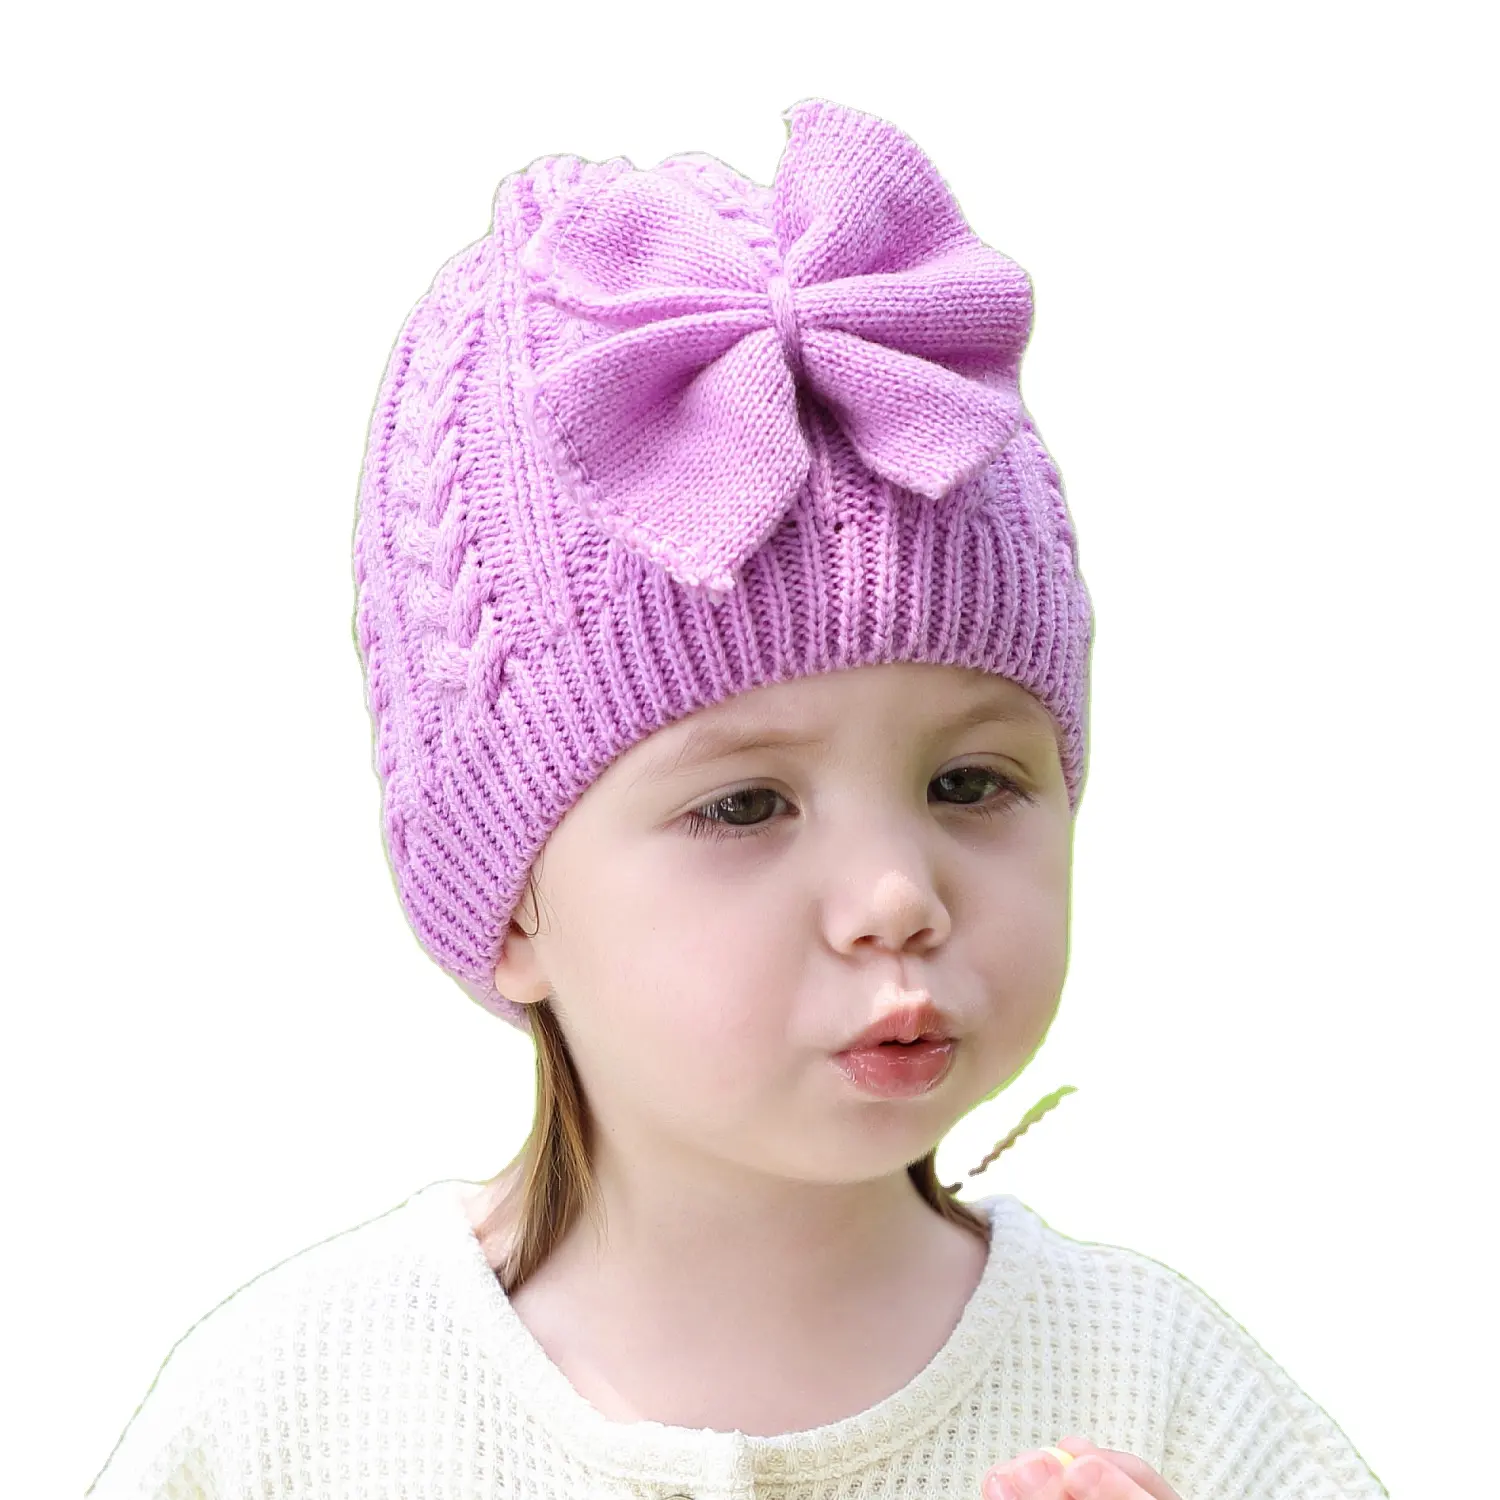 बच्चे लड़की सर्दियों टोपी crochet के बच्चे टोपी प्यारा धनुष बच्चे Beanie शिशु बच्चा लड़कियों के लिए गर्म बुना हुआ टोपी